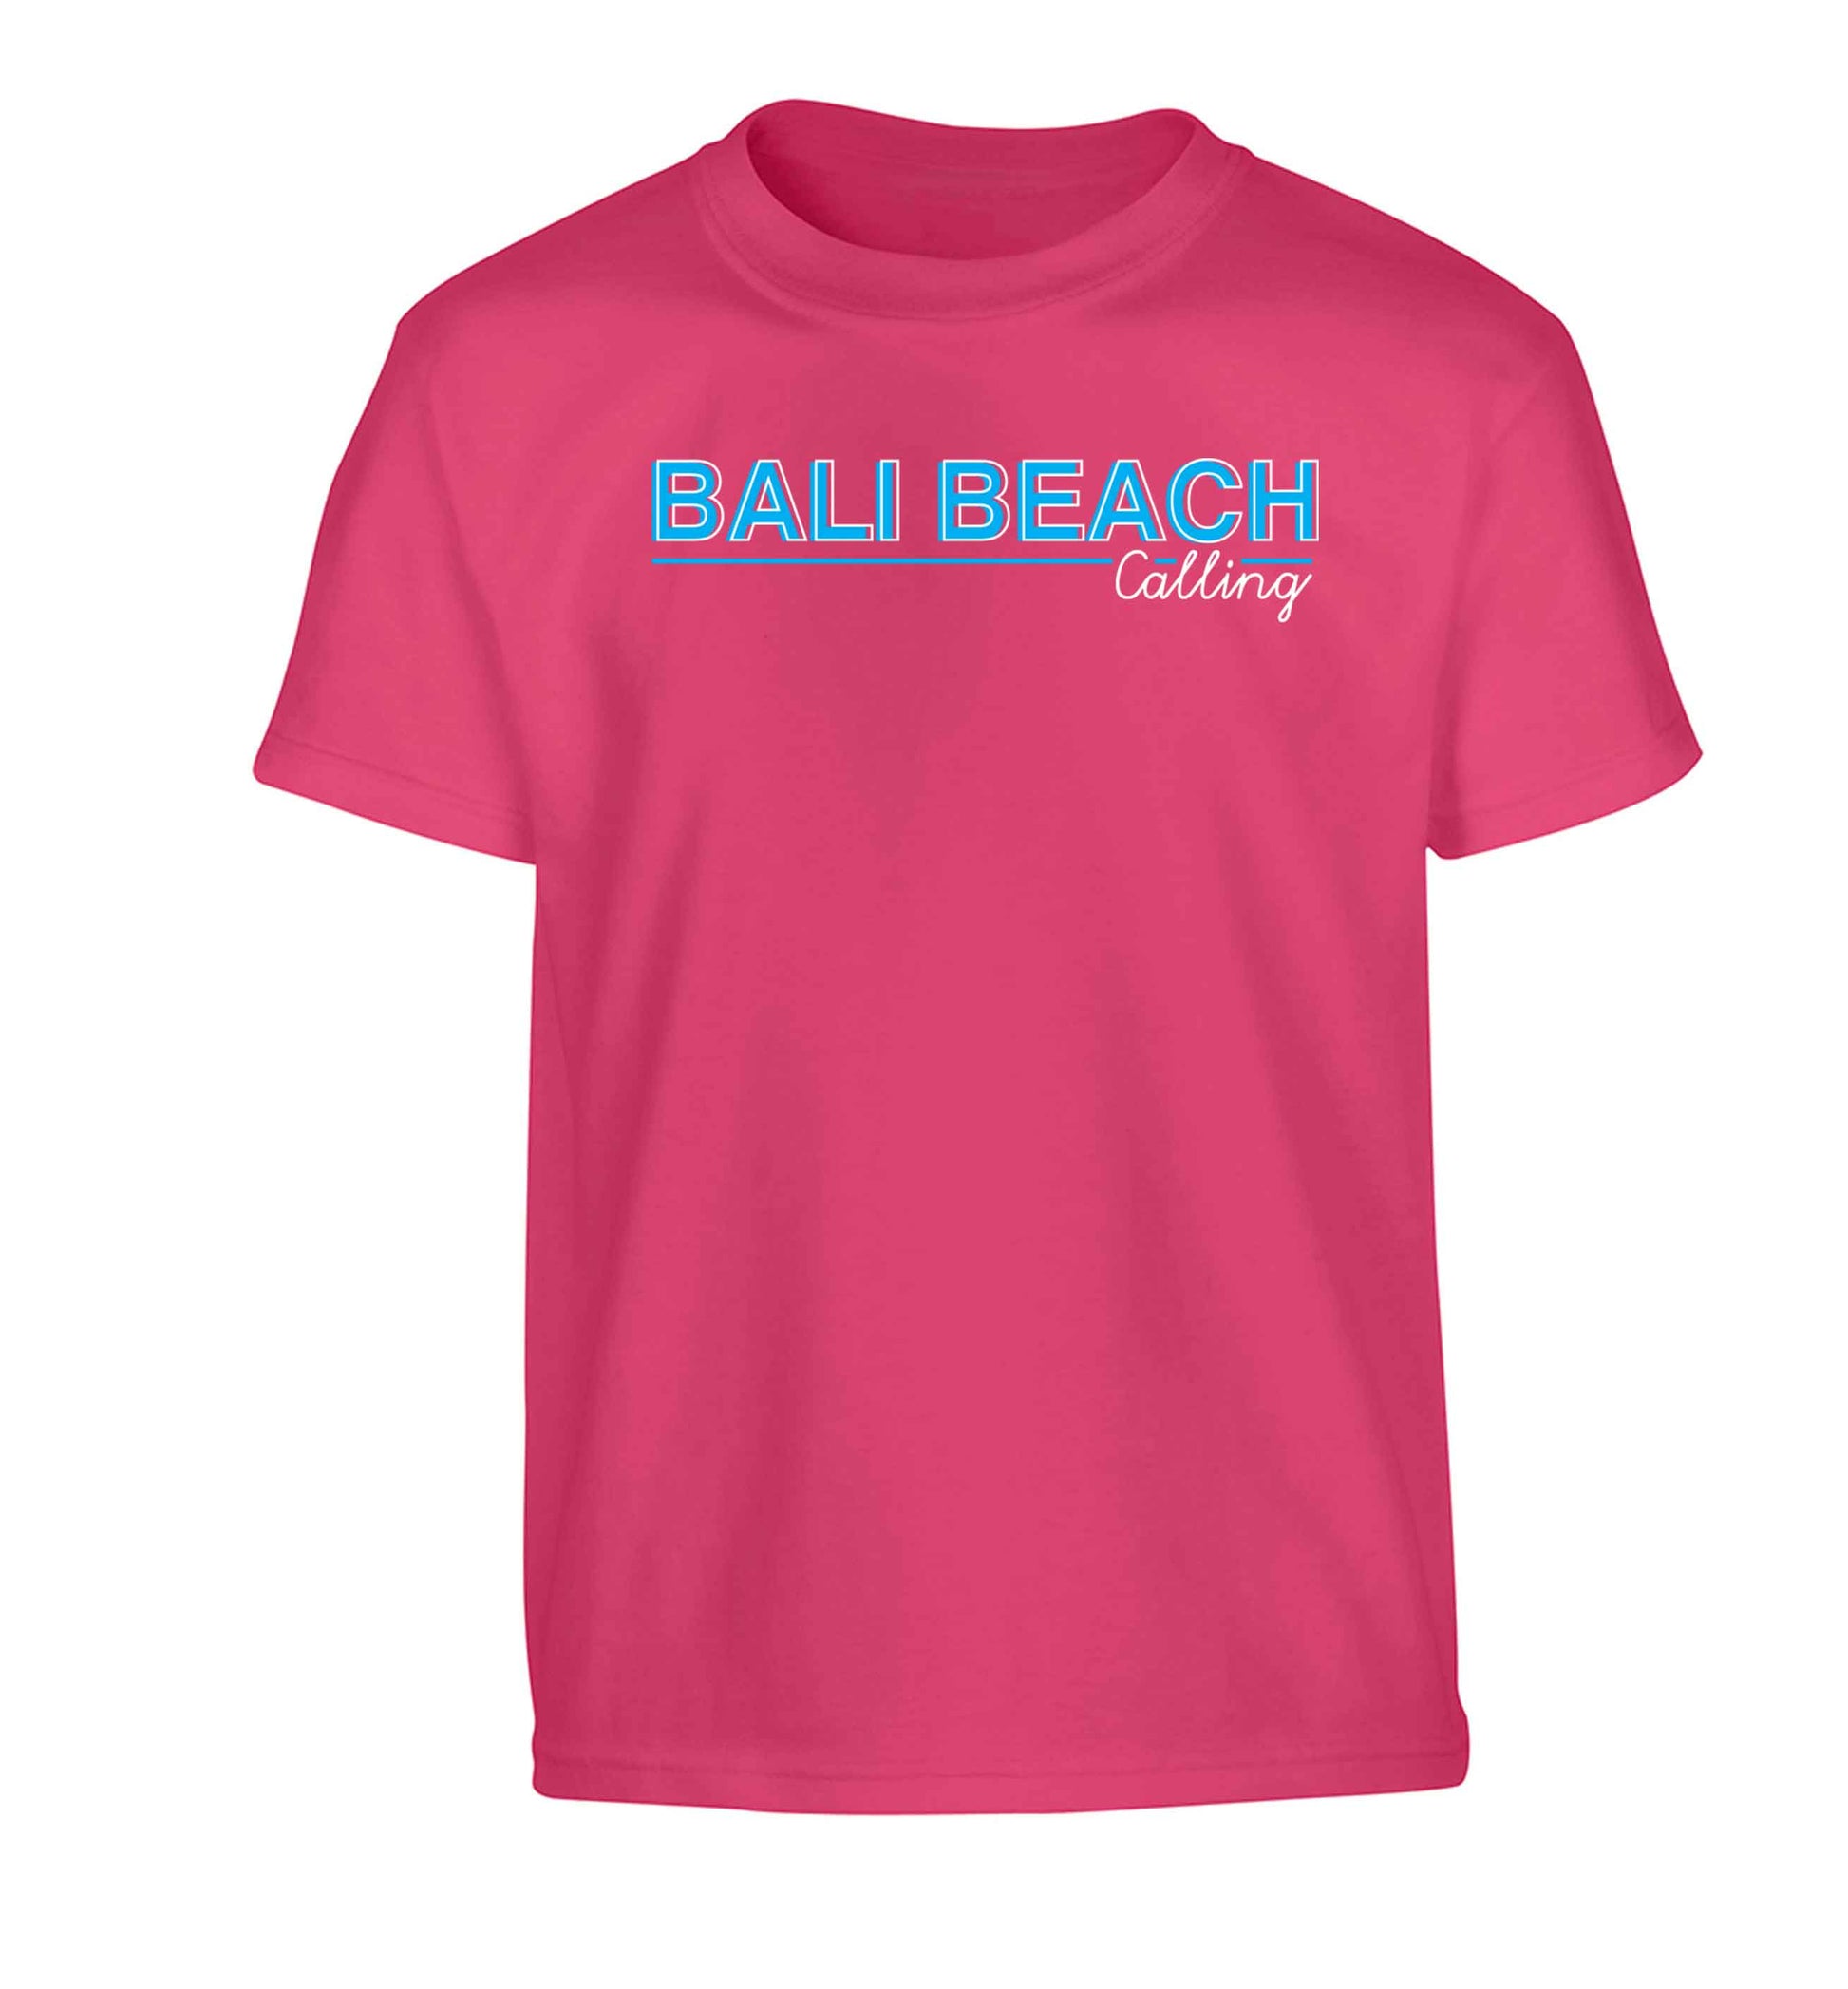 Bali beach calling Children's pink Tshirt 12-13 Years